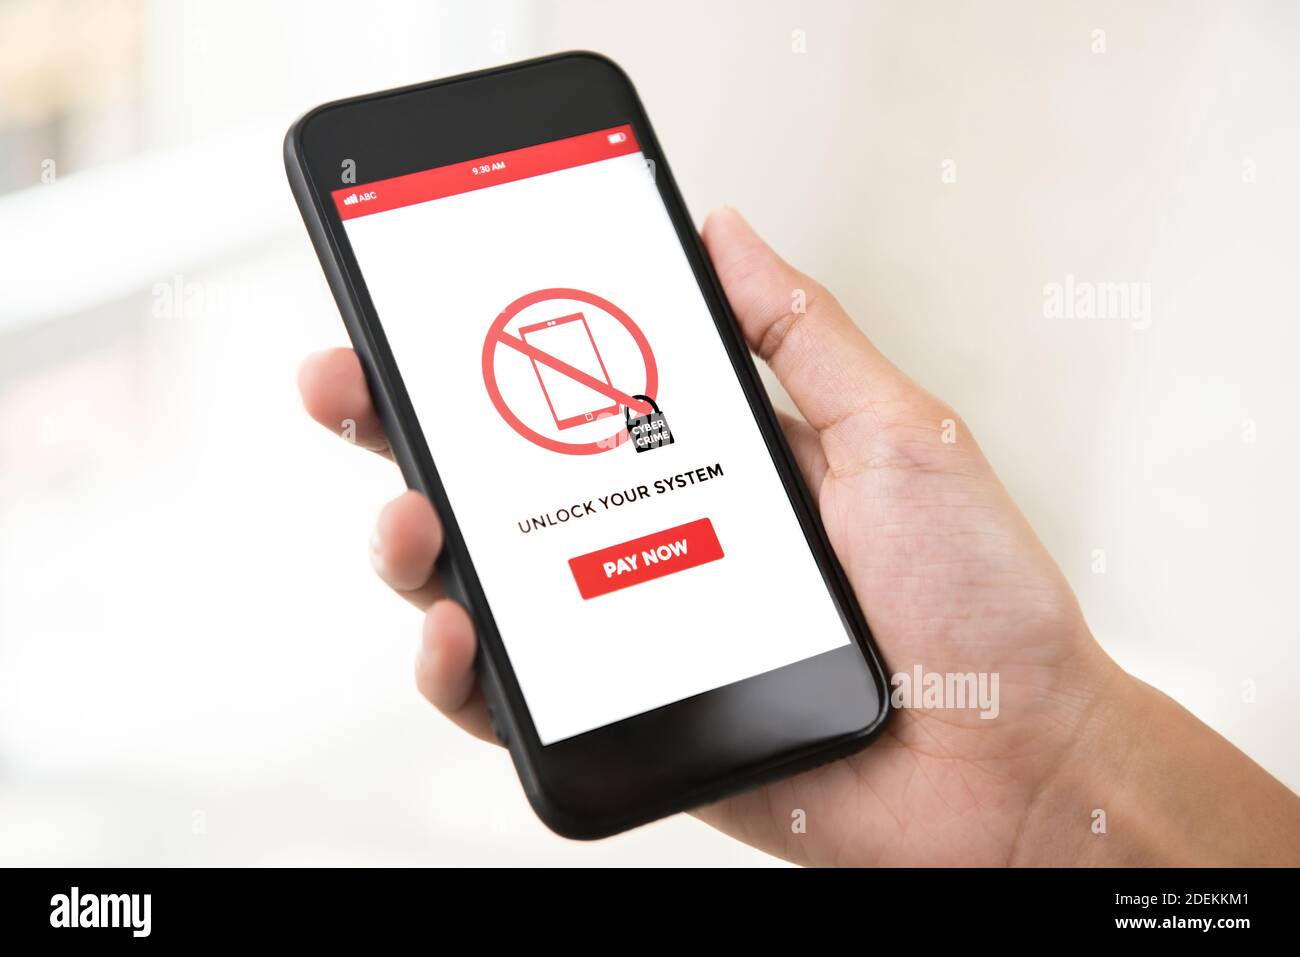 Hand hält Smartphone, dass das System durch Ransomware gesperrt, zeigt auf dem Bildschirm - Cyber-Angriff Konzept Stockfoto